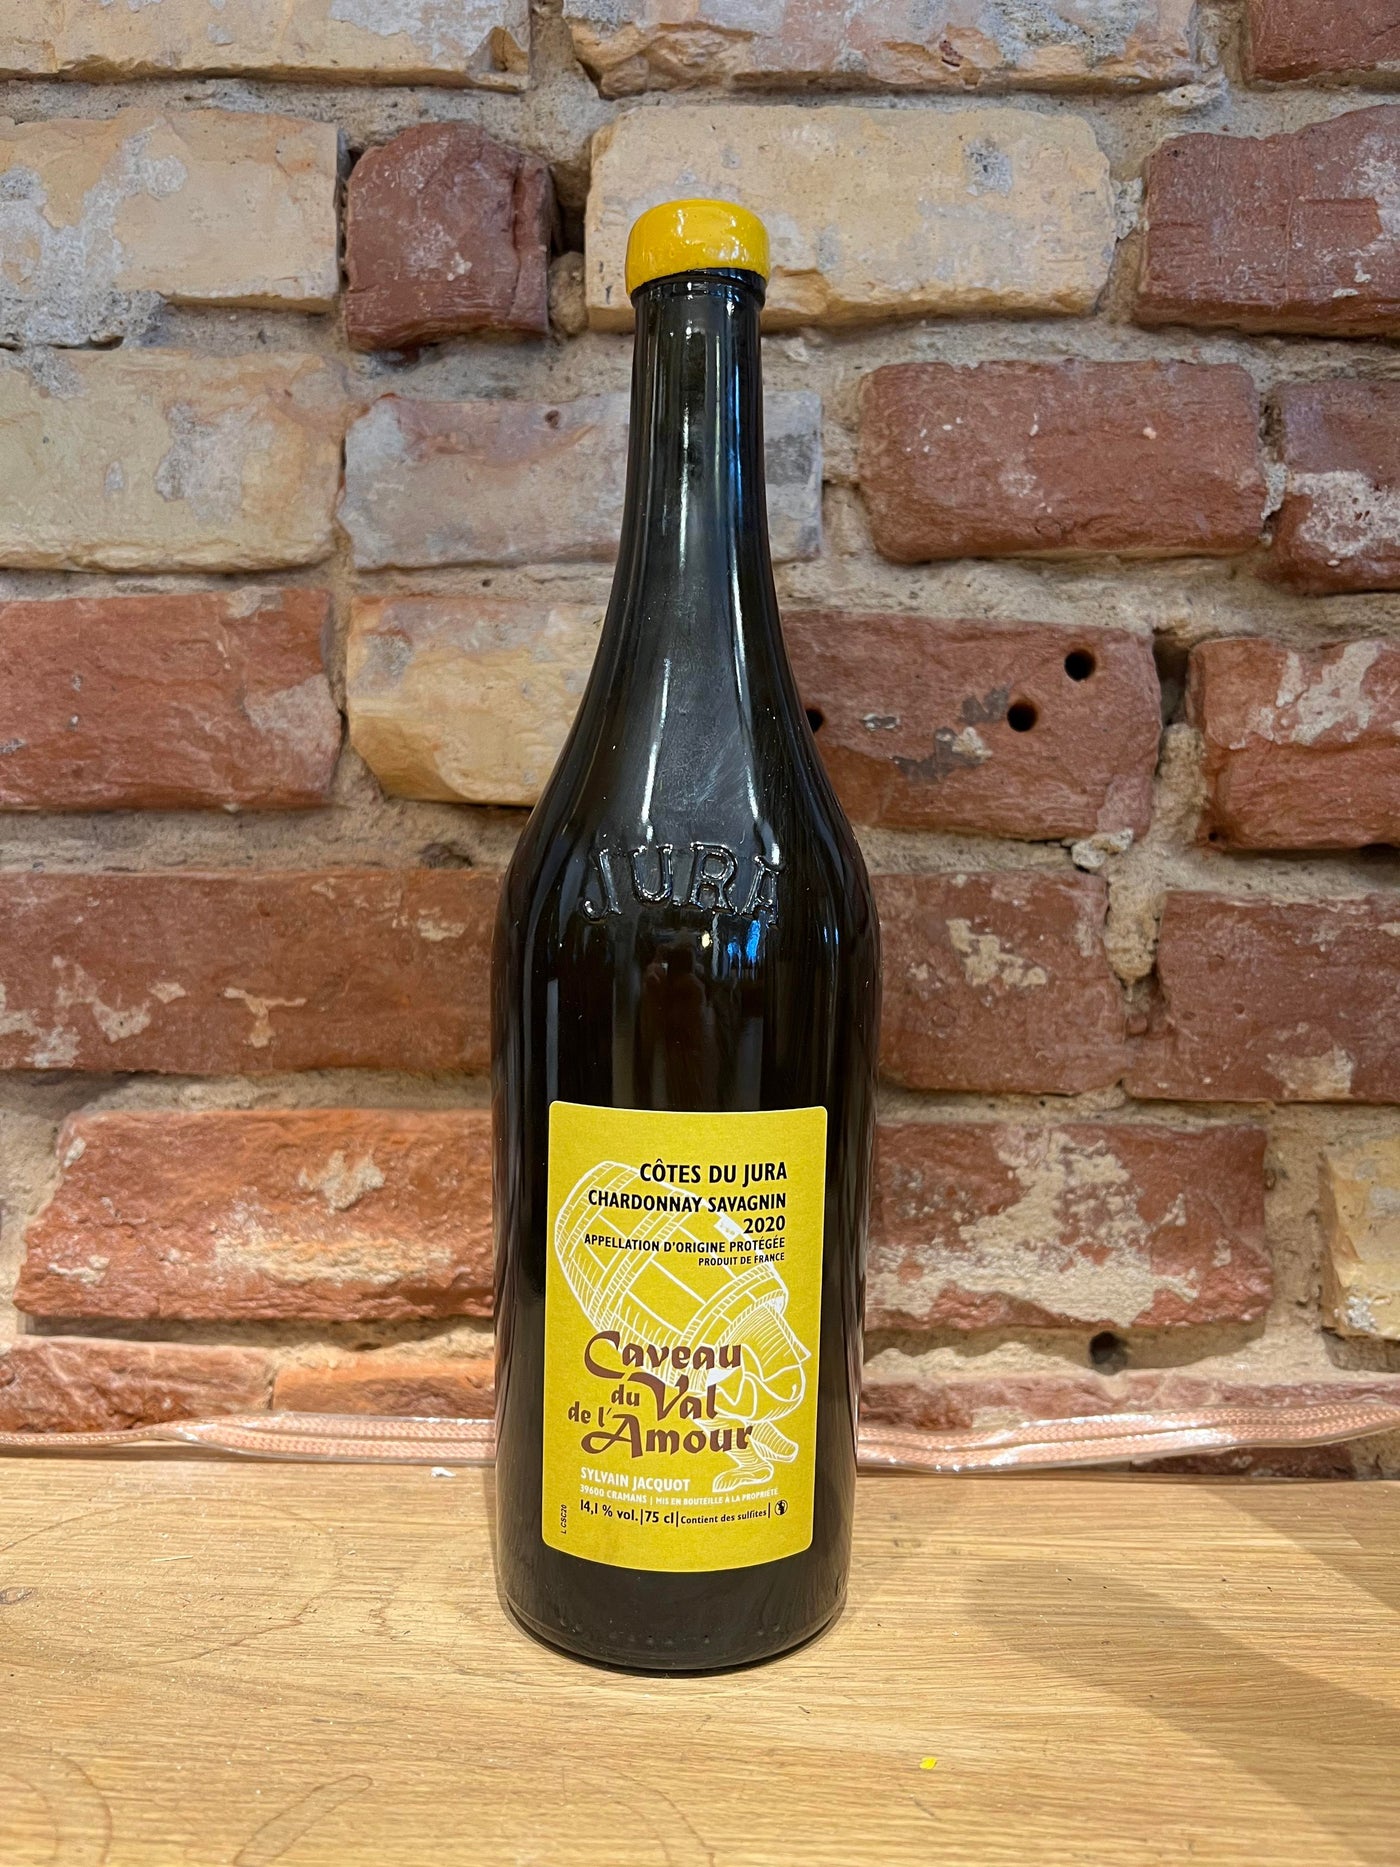 Caveau du val d'Amour - Chardonnay/Savagnin '20